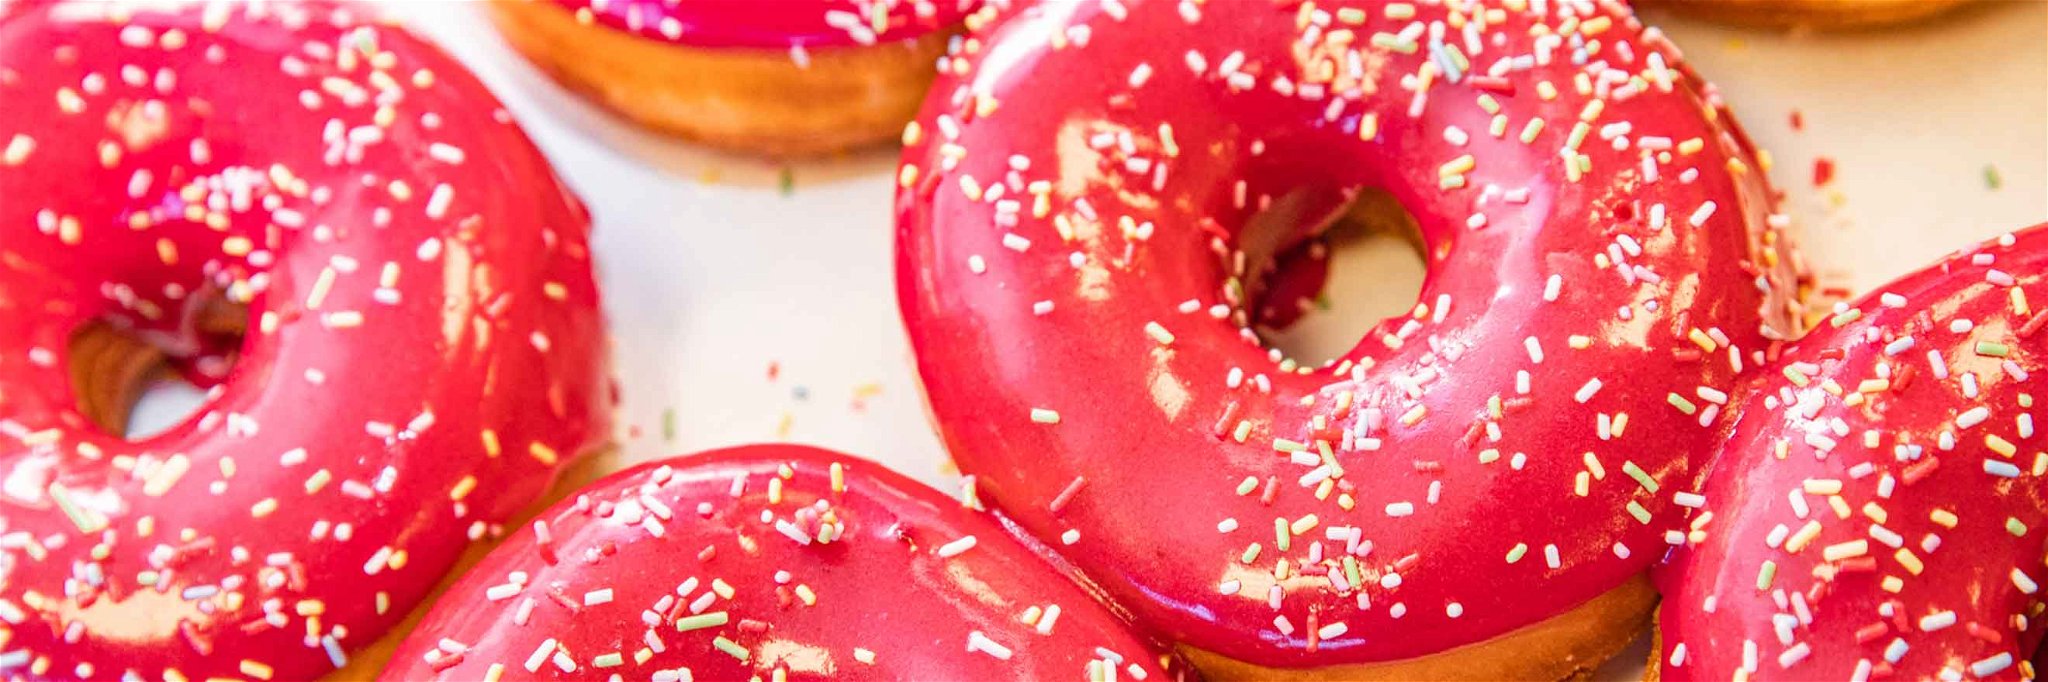 Bunt, kreativ, süß und vegan: so sind die Donuts von »Brammibal’s Donuts«